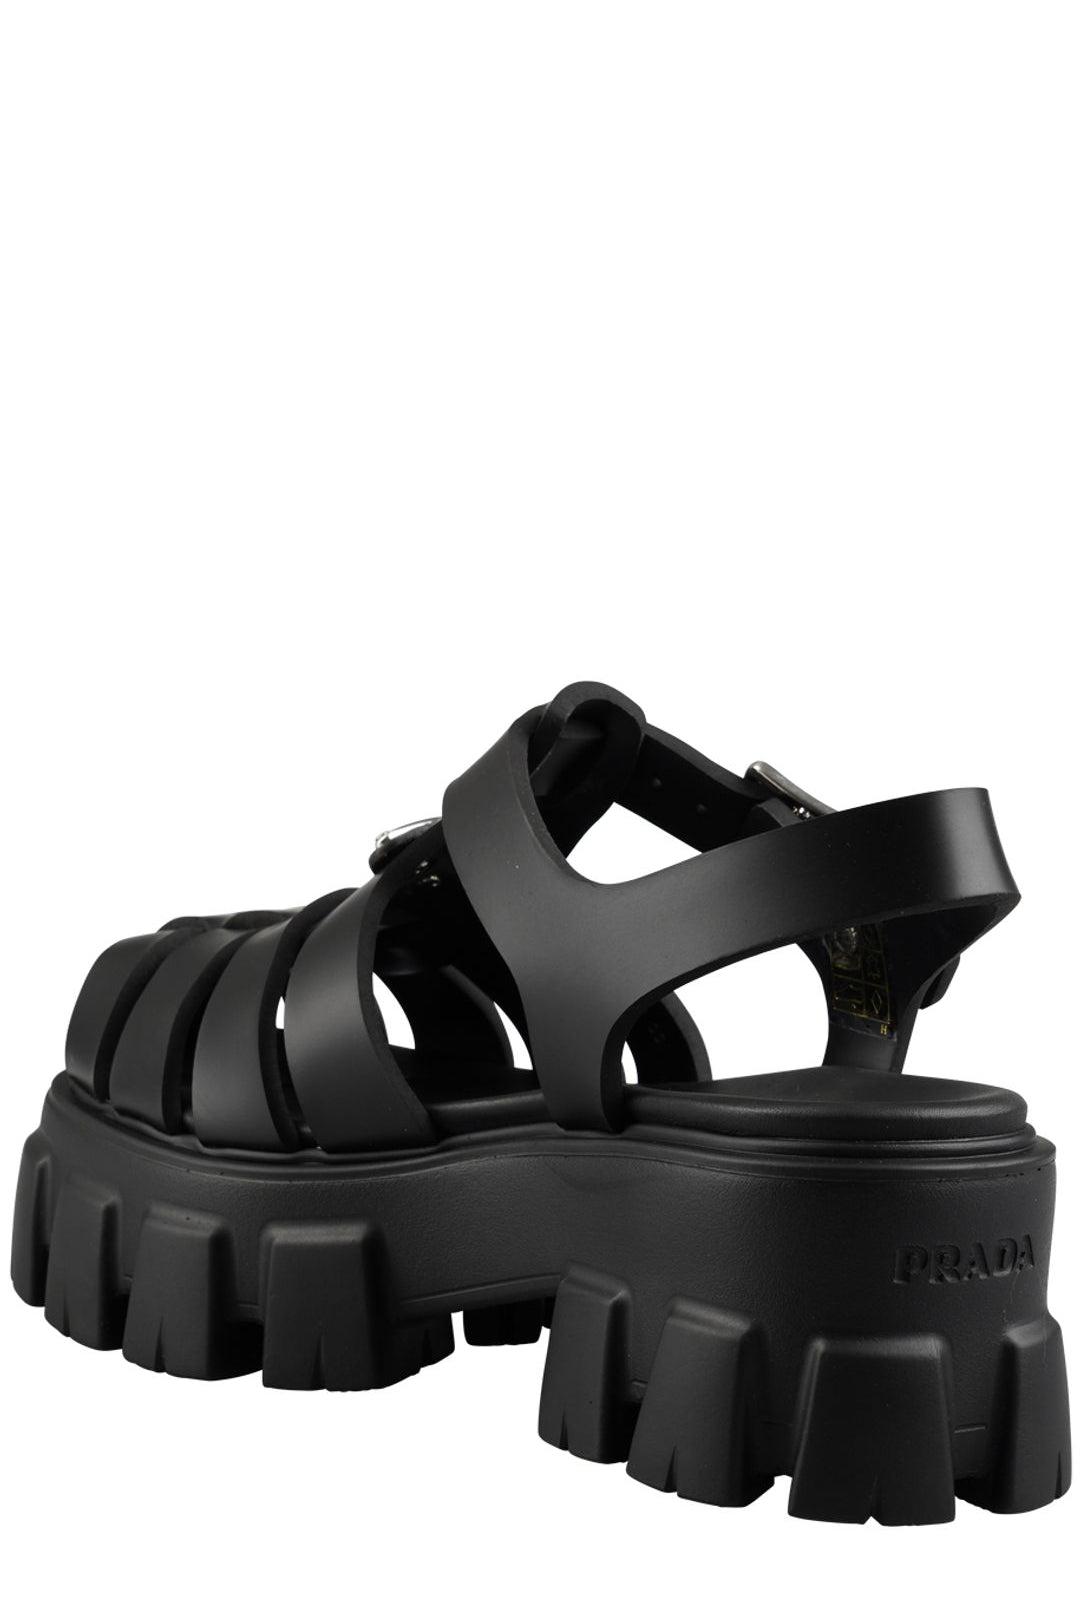 Prada Soft Cage Platform Sandals in Black | Lyst